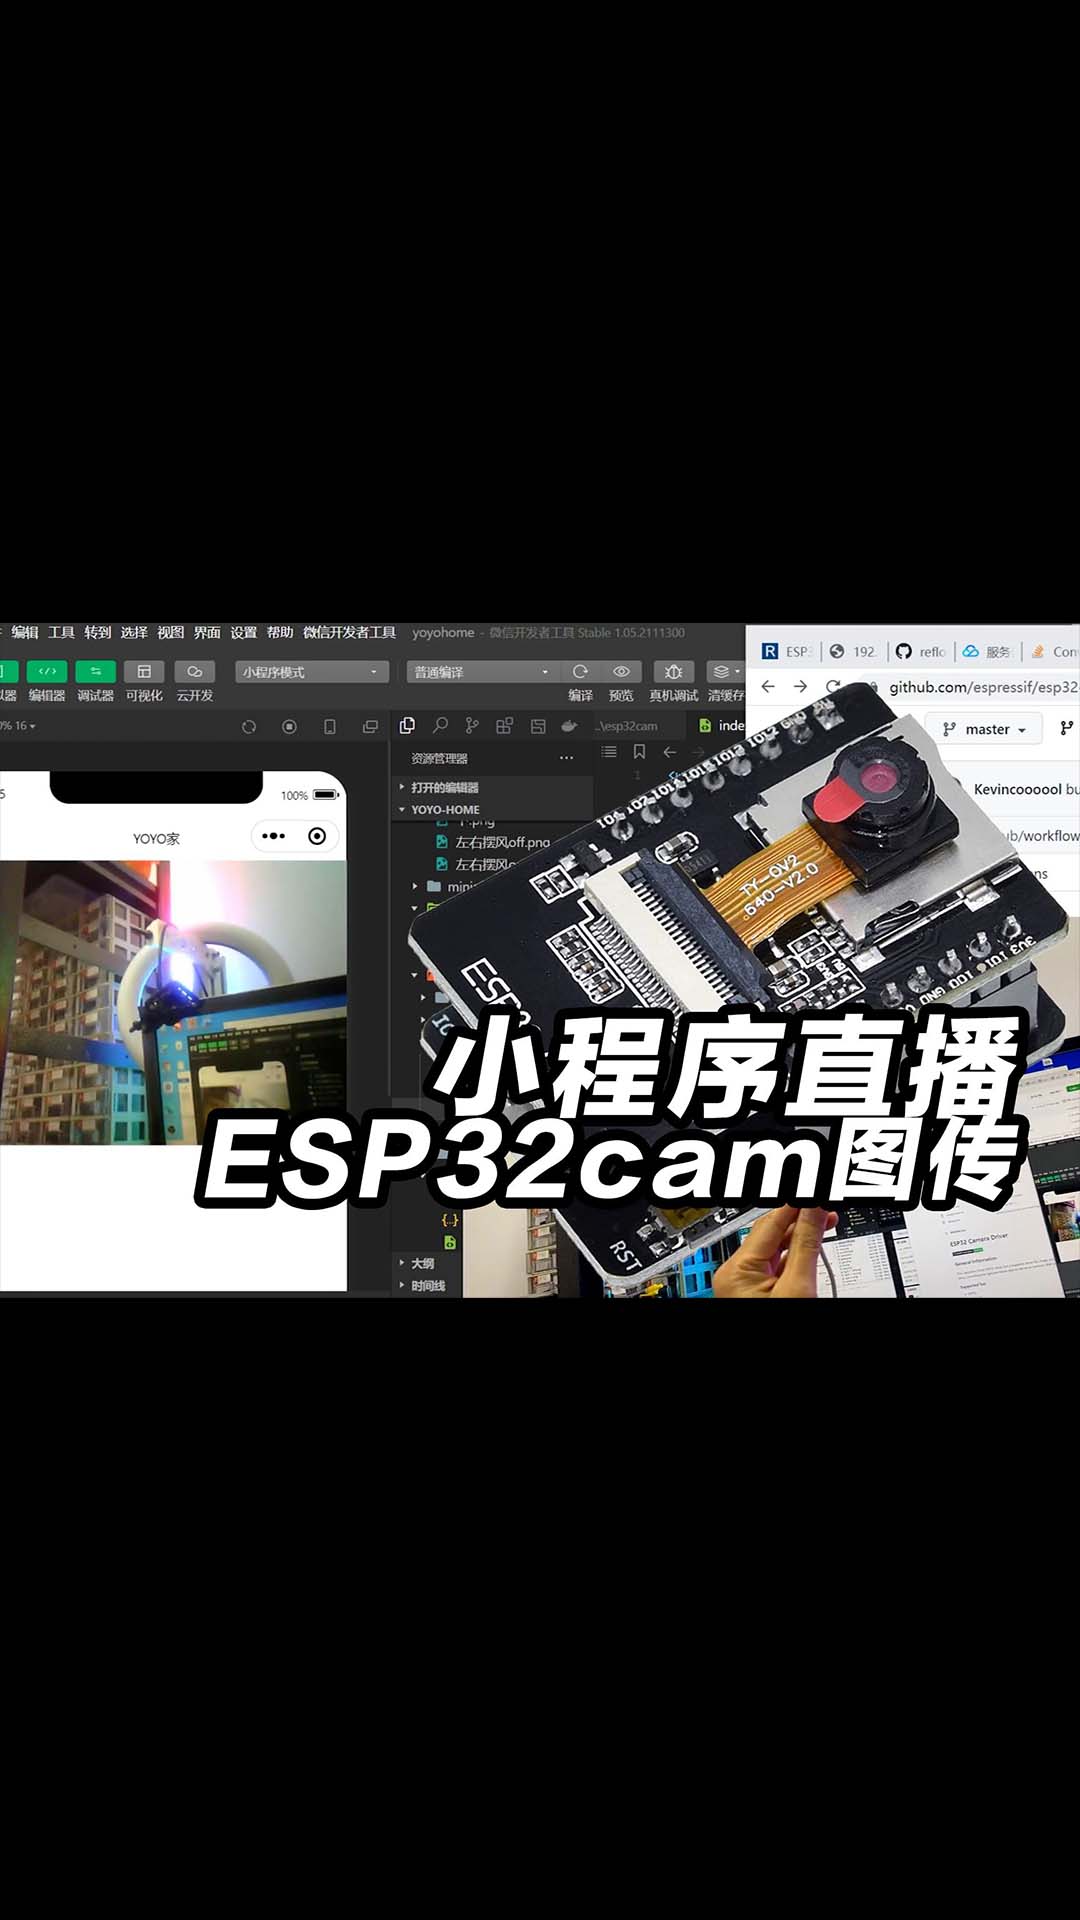 esp32cam视频流在小程序上直播，用esp来做个图传，不会没关系，代码直接抄。